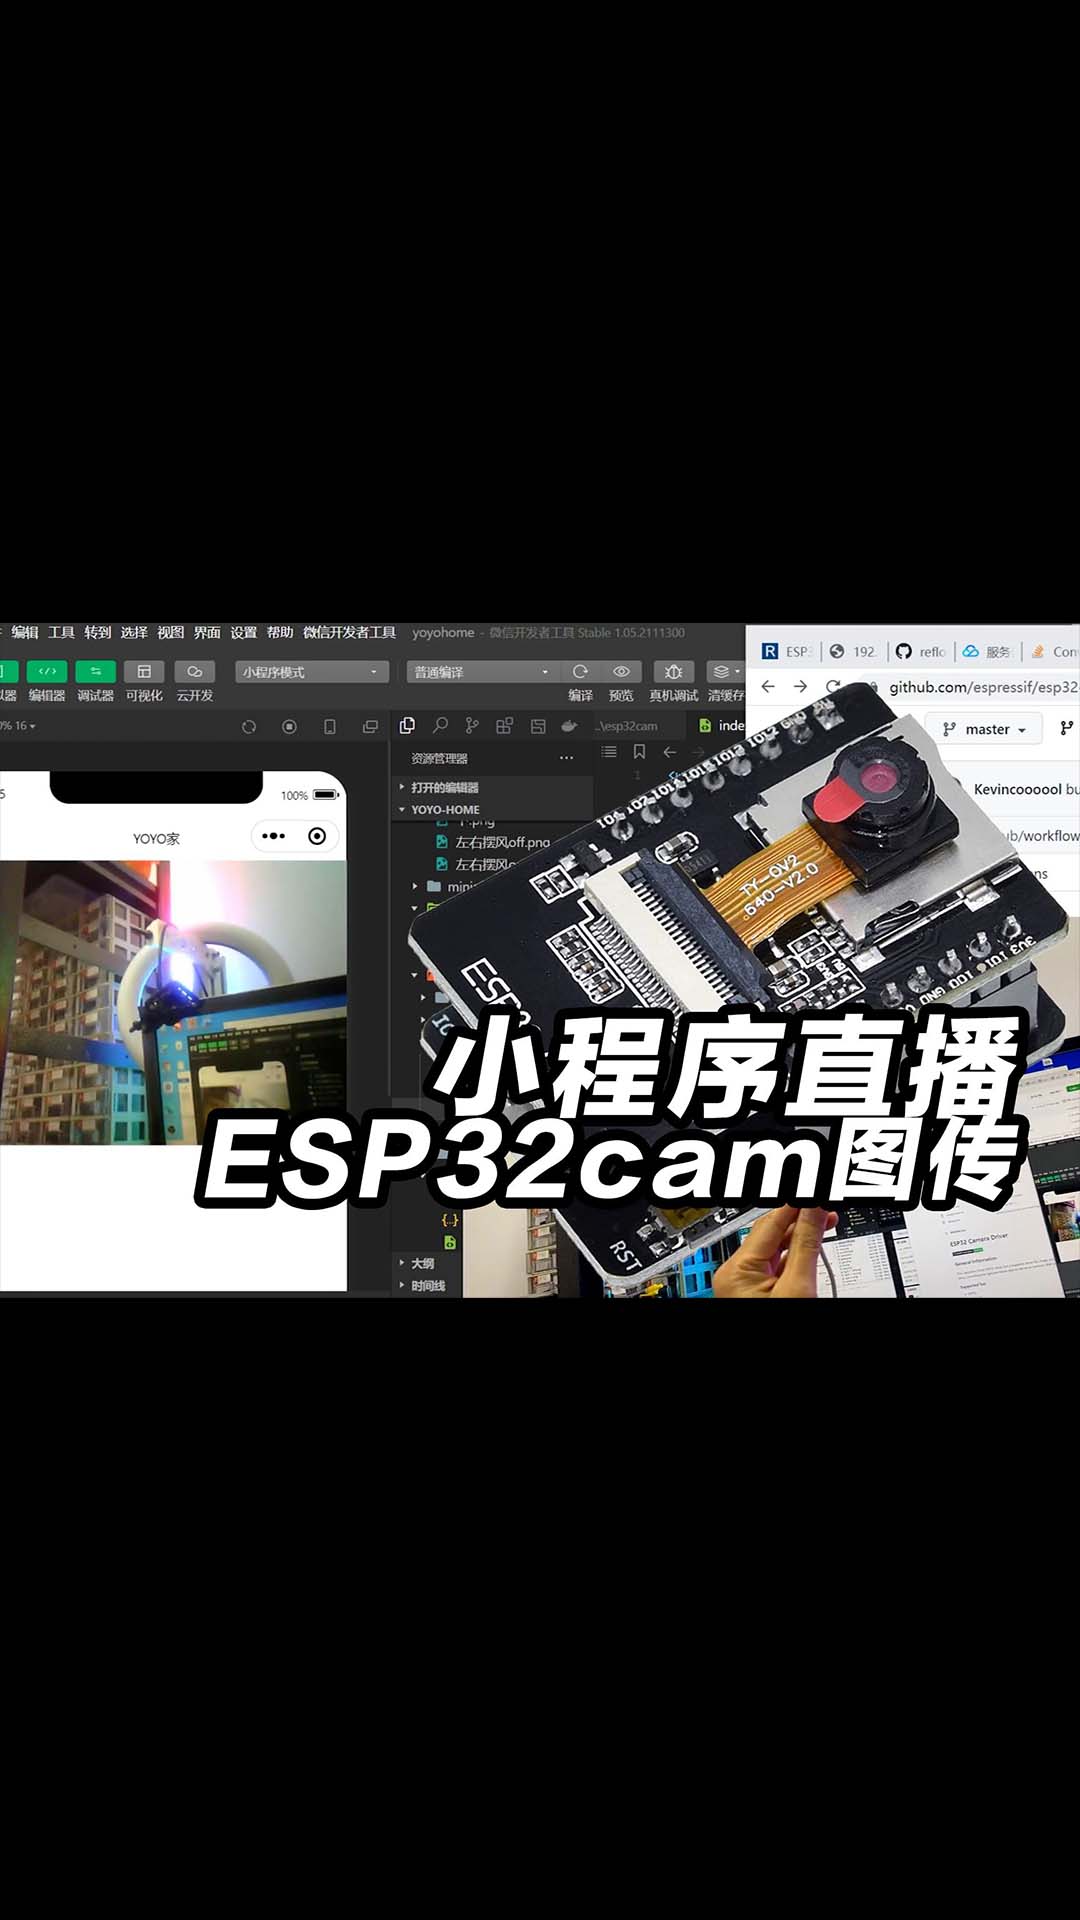 esp32cam视频流在小程序上直播，用esp来做个图传，不会没关系，代码直接抄。